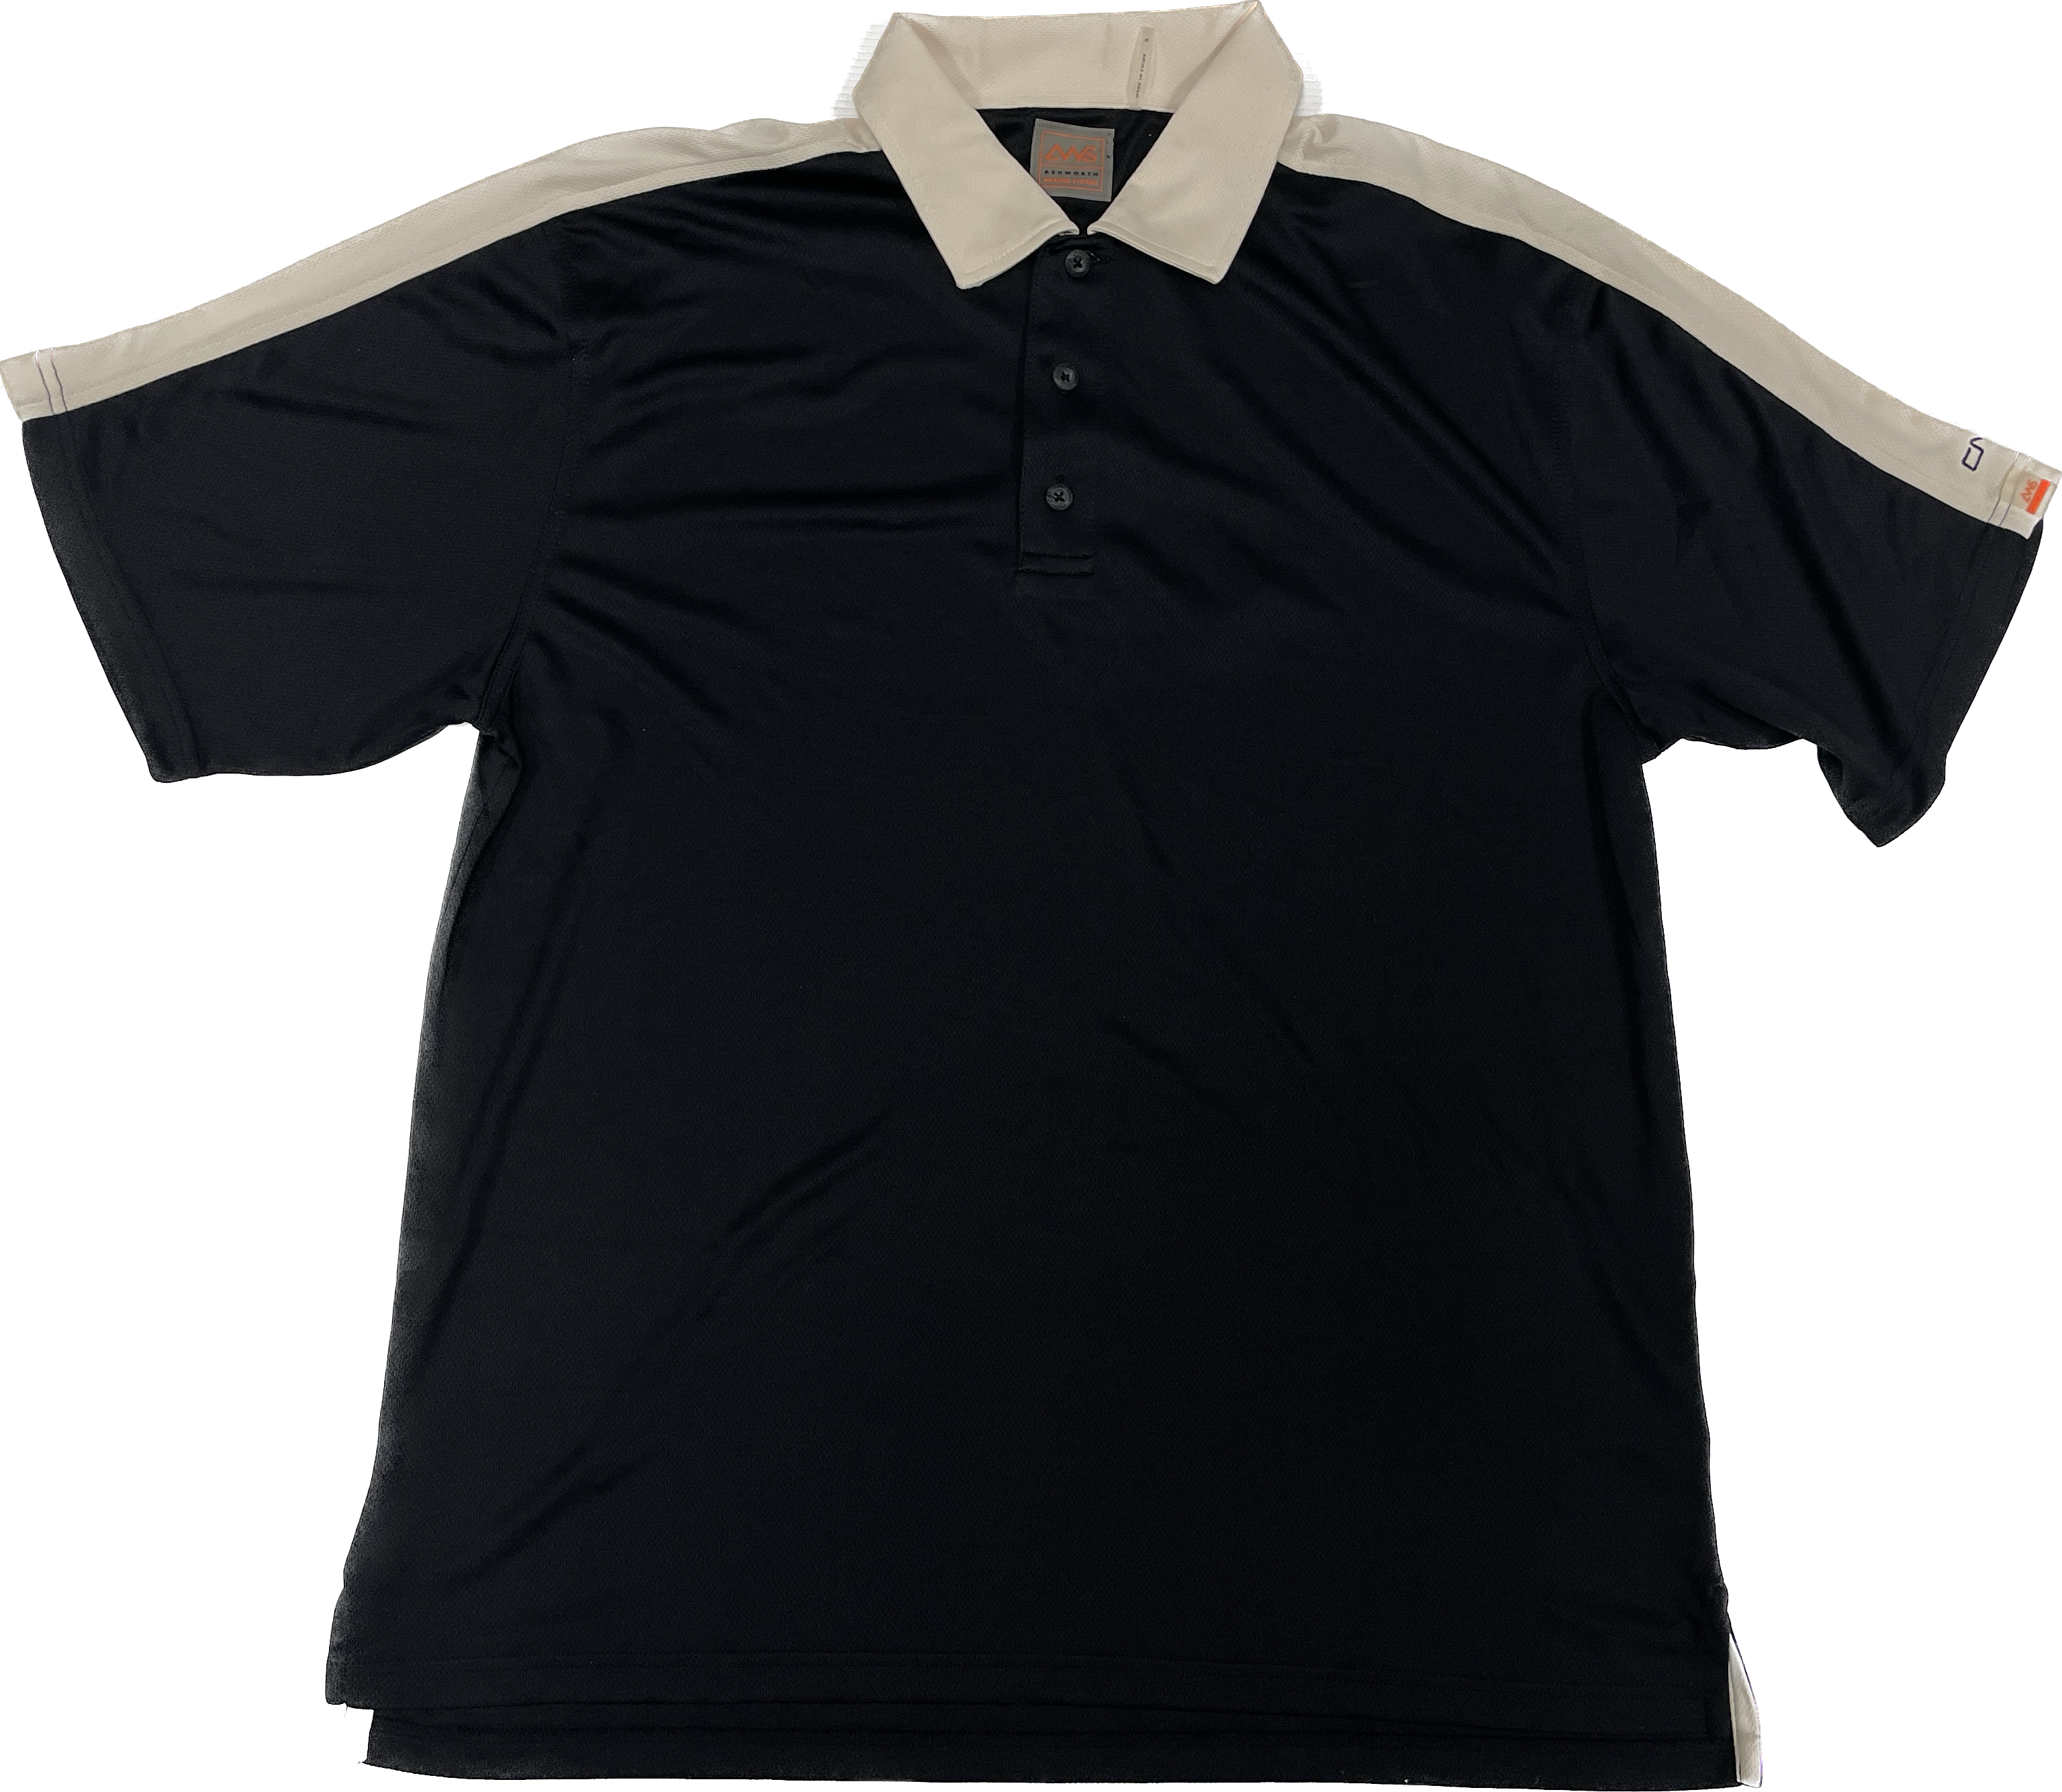 Black & White Men's Short Sleeve Polo